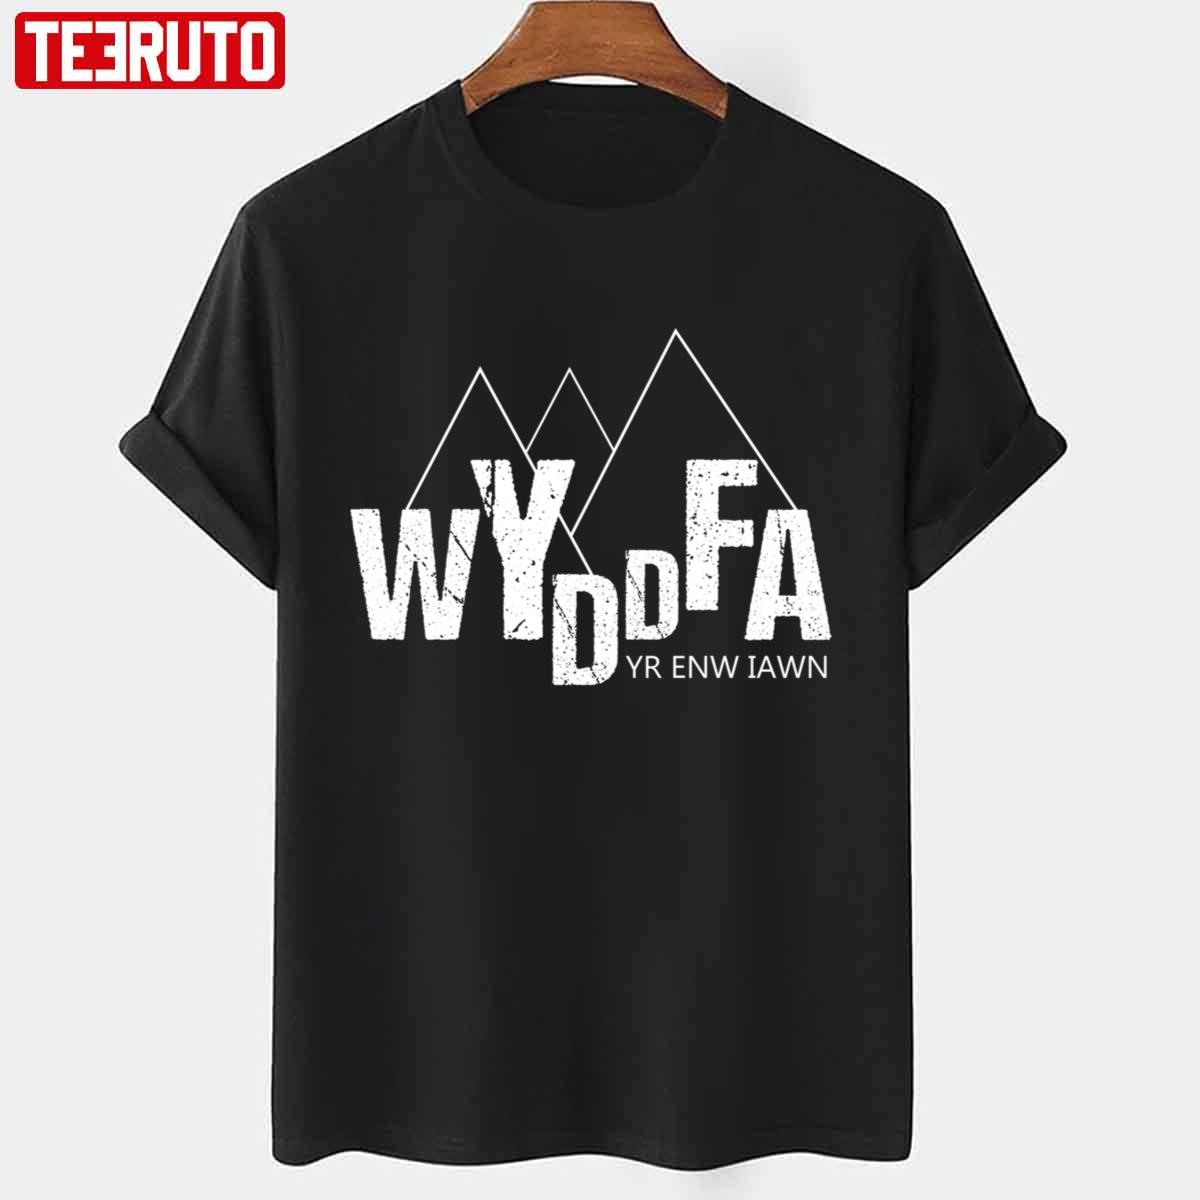 Wyddfa Yr Enw Iawn Vintage Unisex T-shirt